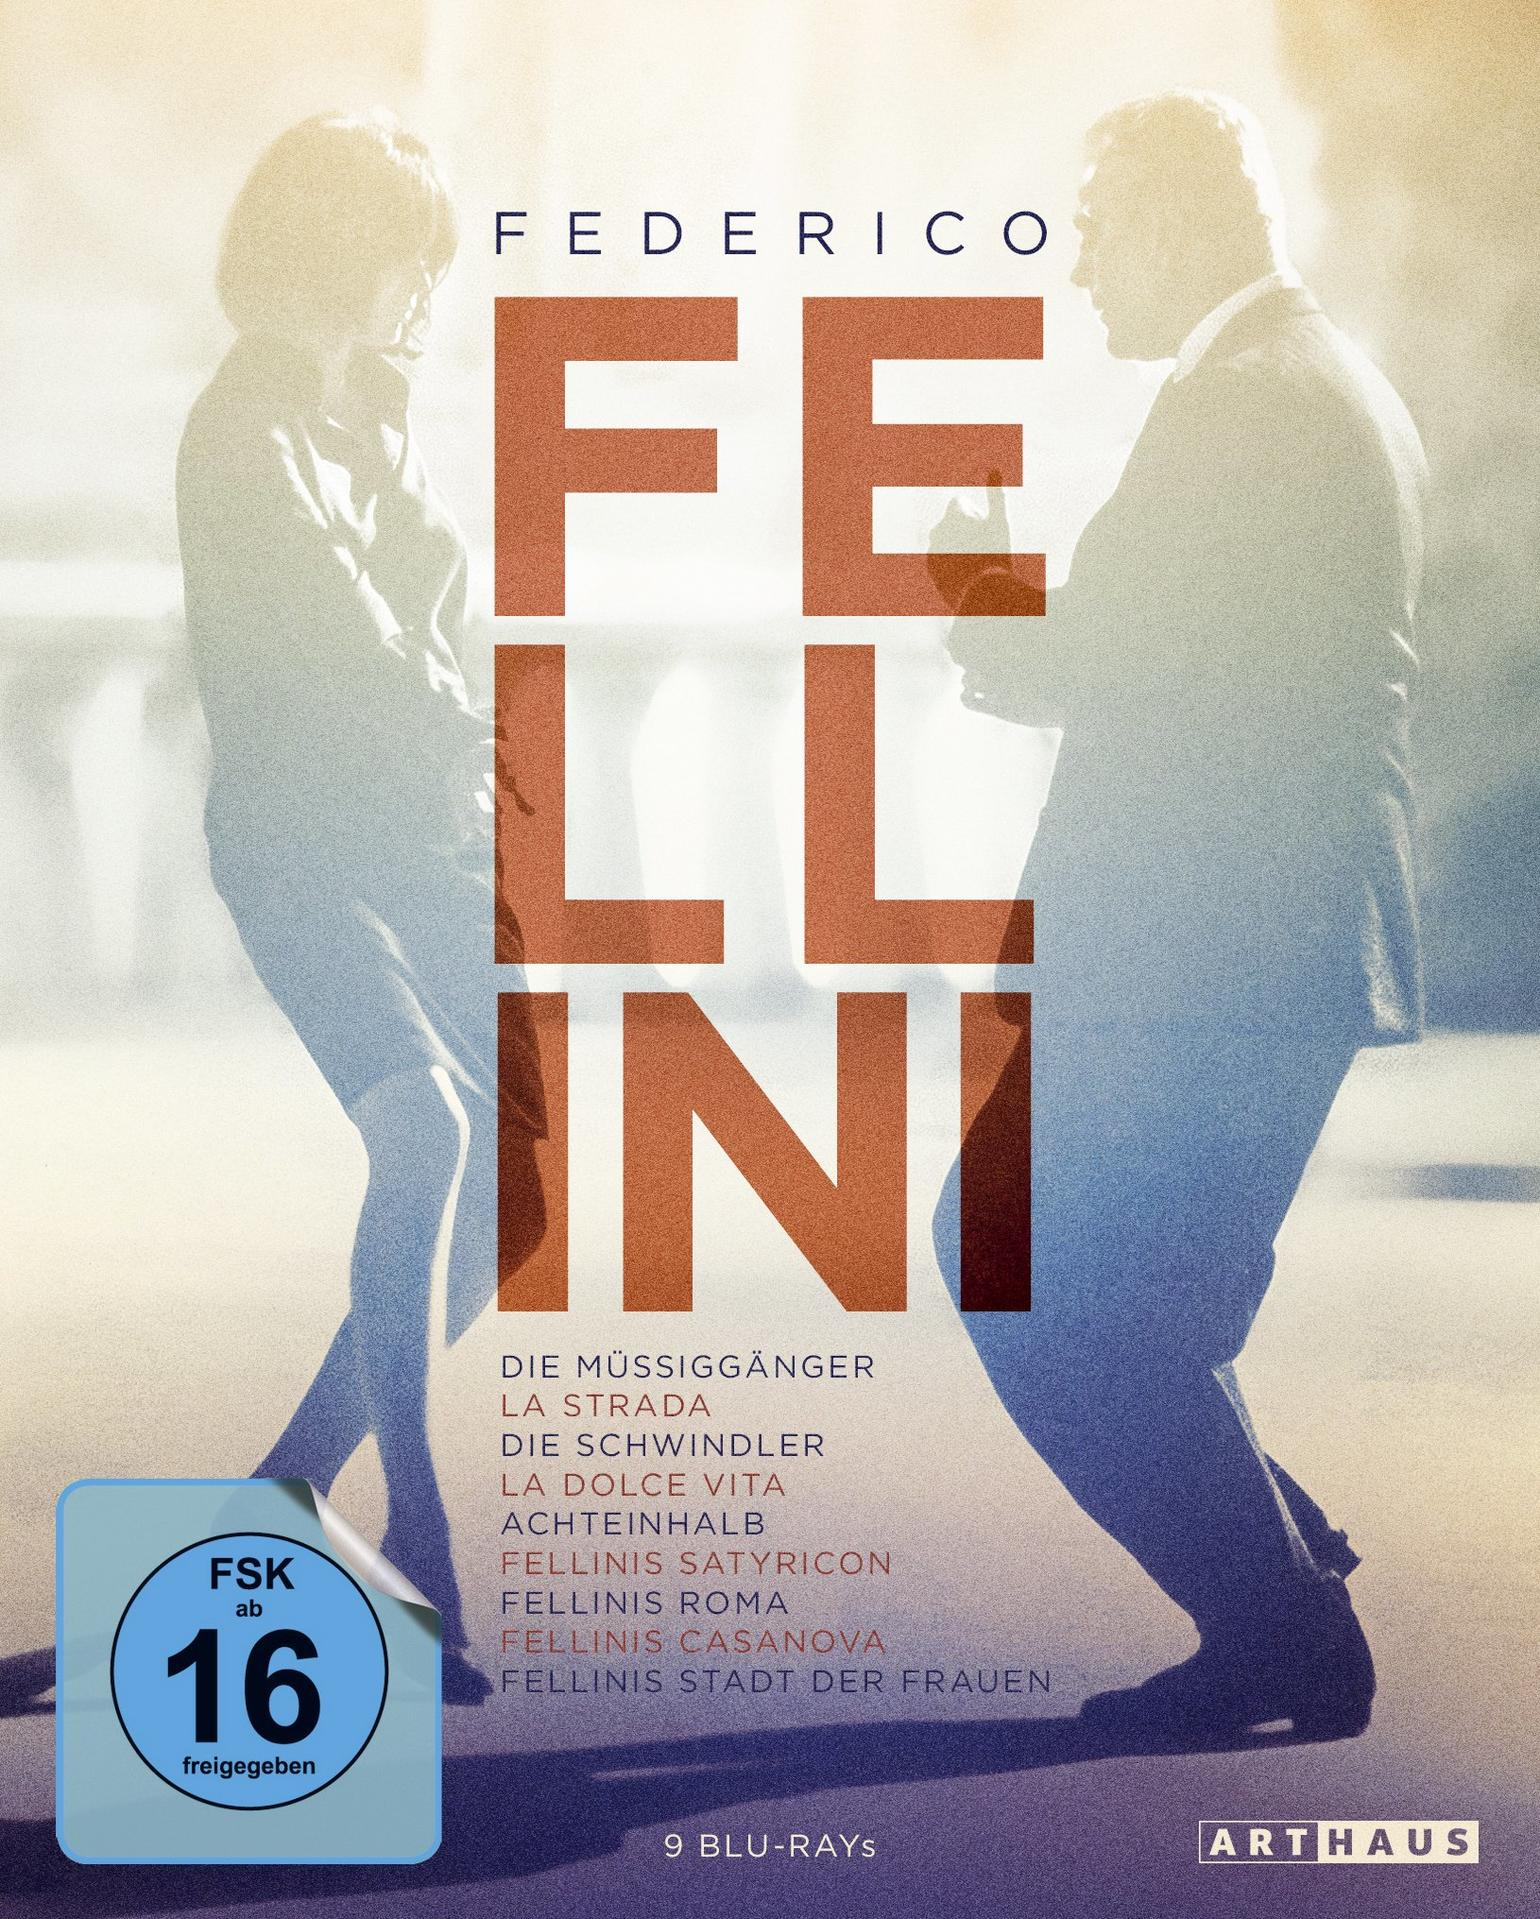 Edition Federico Fellini Blu-ray